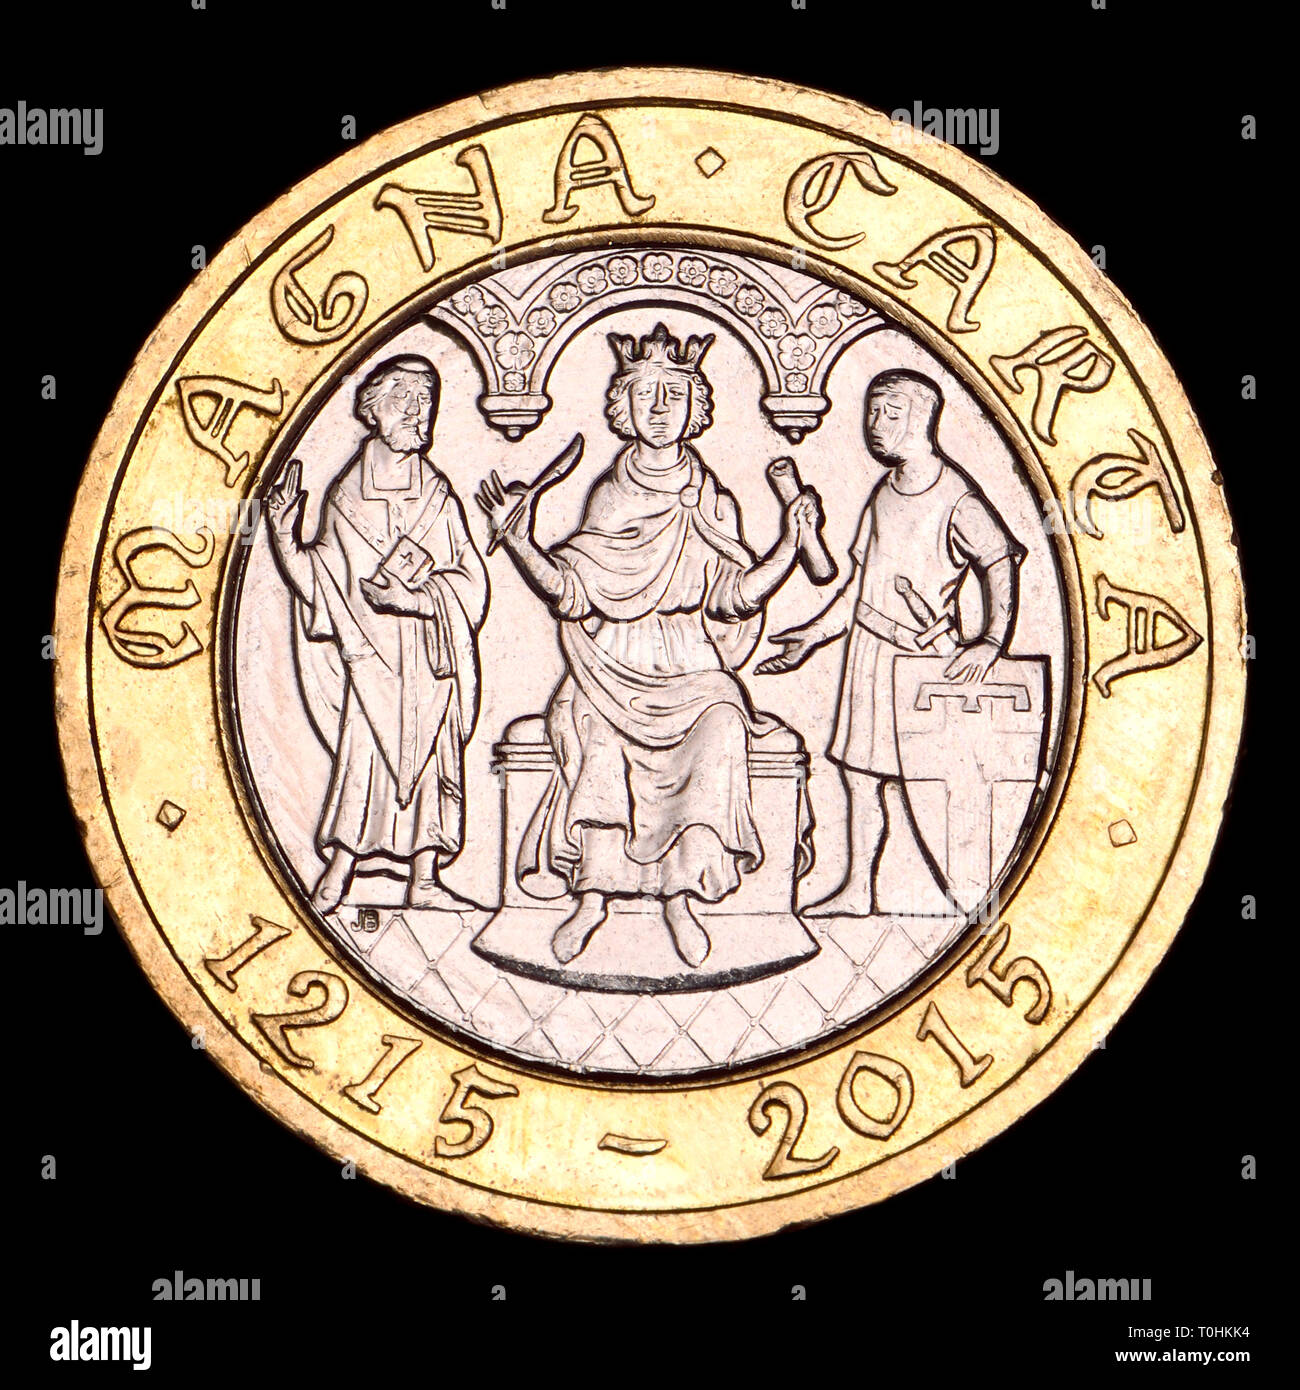 Britische bimetallischen £ 2 Münze. Zur 800-Jahrfeier der Magna Carta (2015) Stockfoto